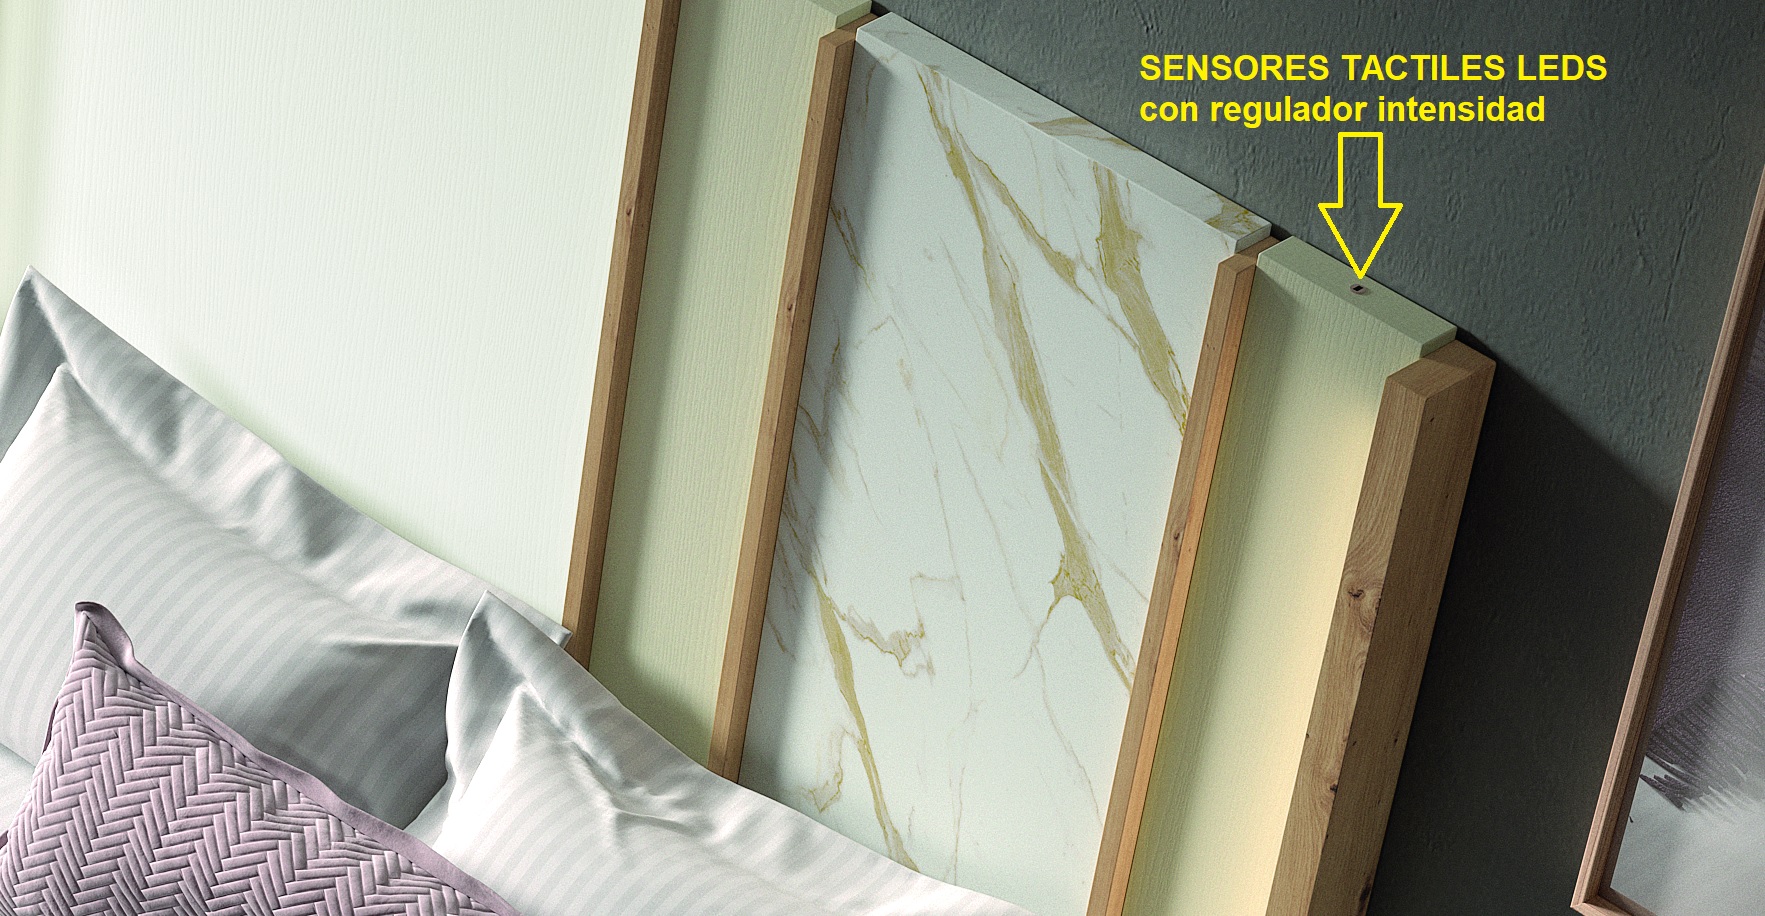 NEW dormitorios by Rosamor_DORMITORIO comp. 229.3 del catálogo MUEBLES ANTOÑÁN sensores tactiles